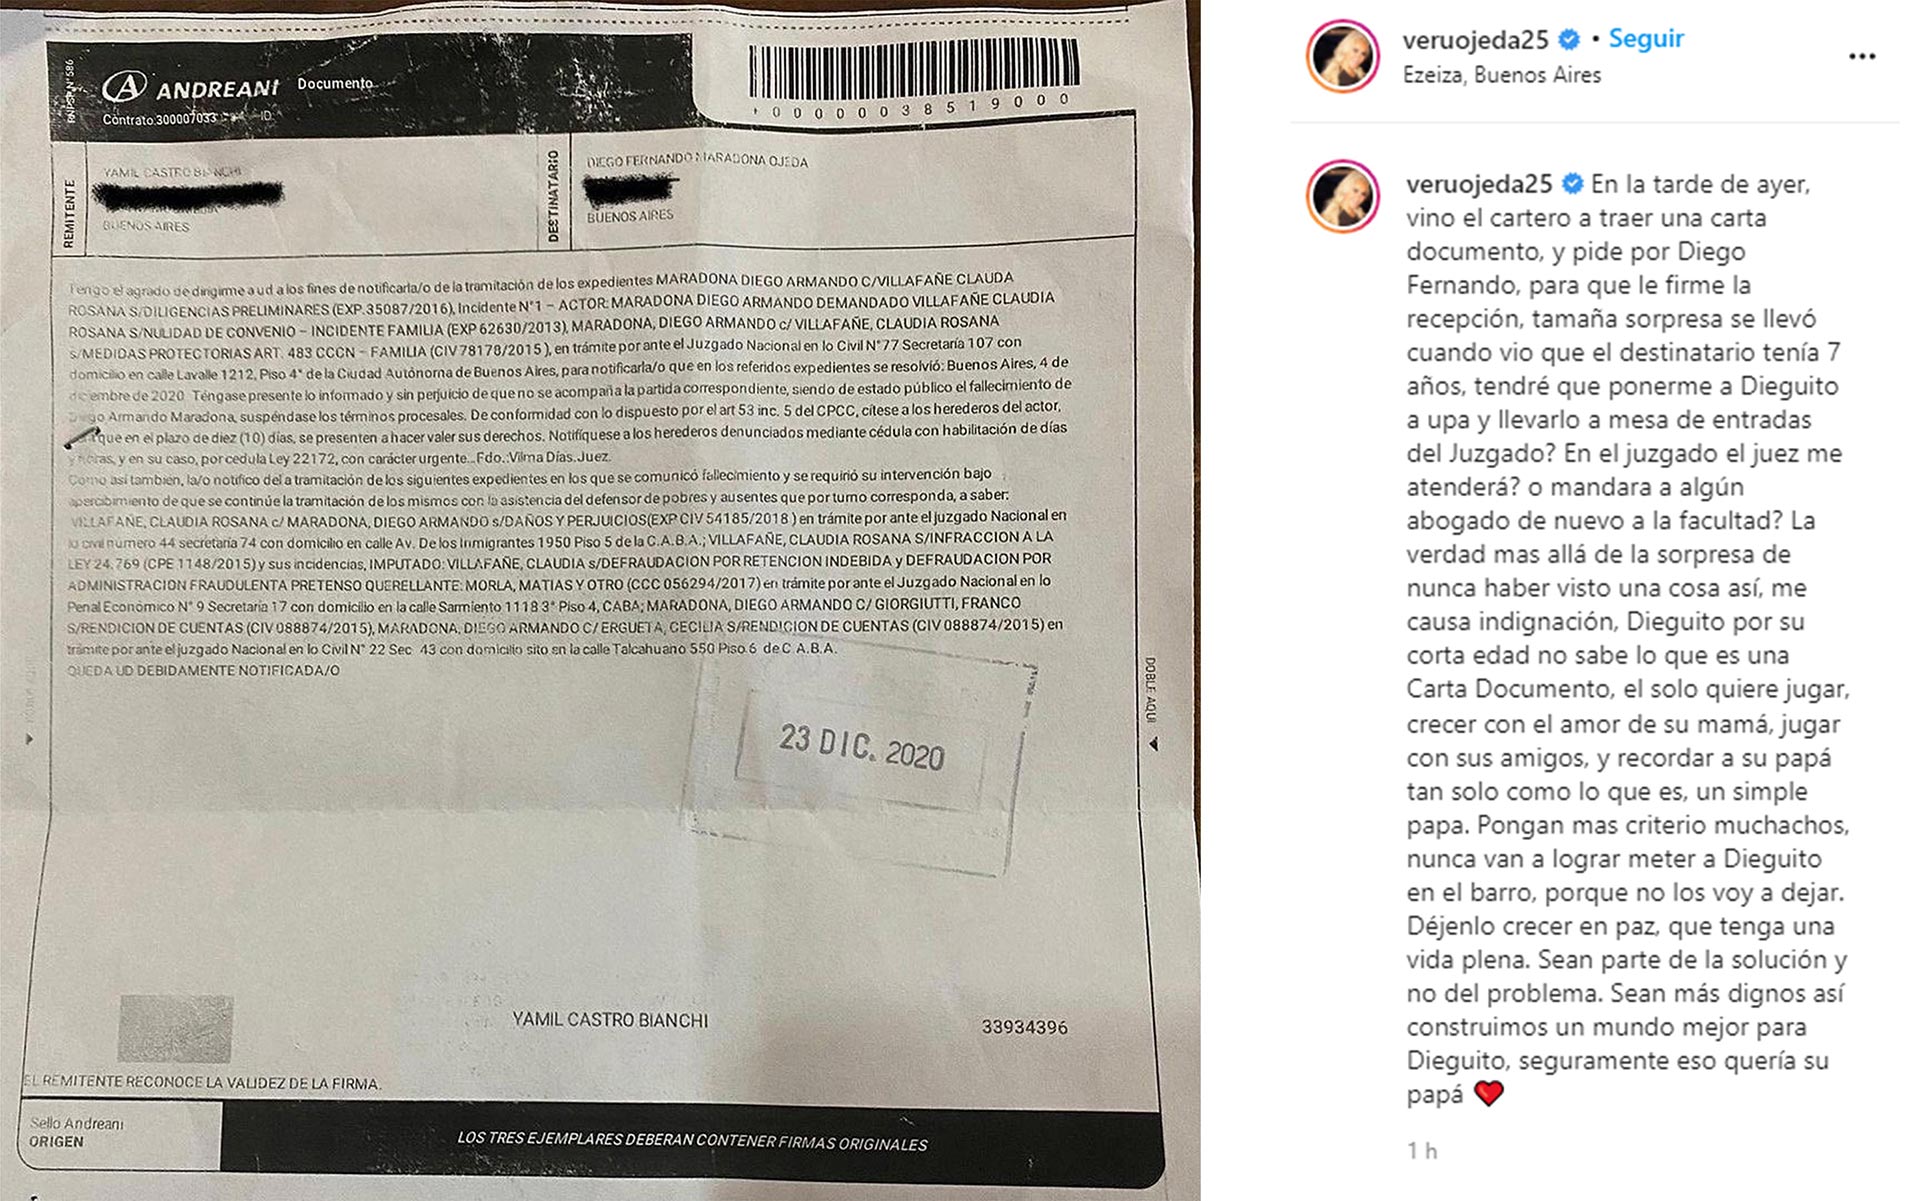 La carta documento que recibió Dieguito Fernando y el texto que compartió Verónica Ojeda en su cuenta de Instagram